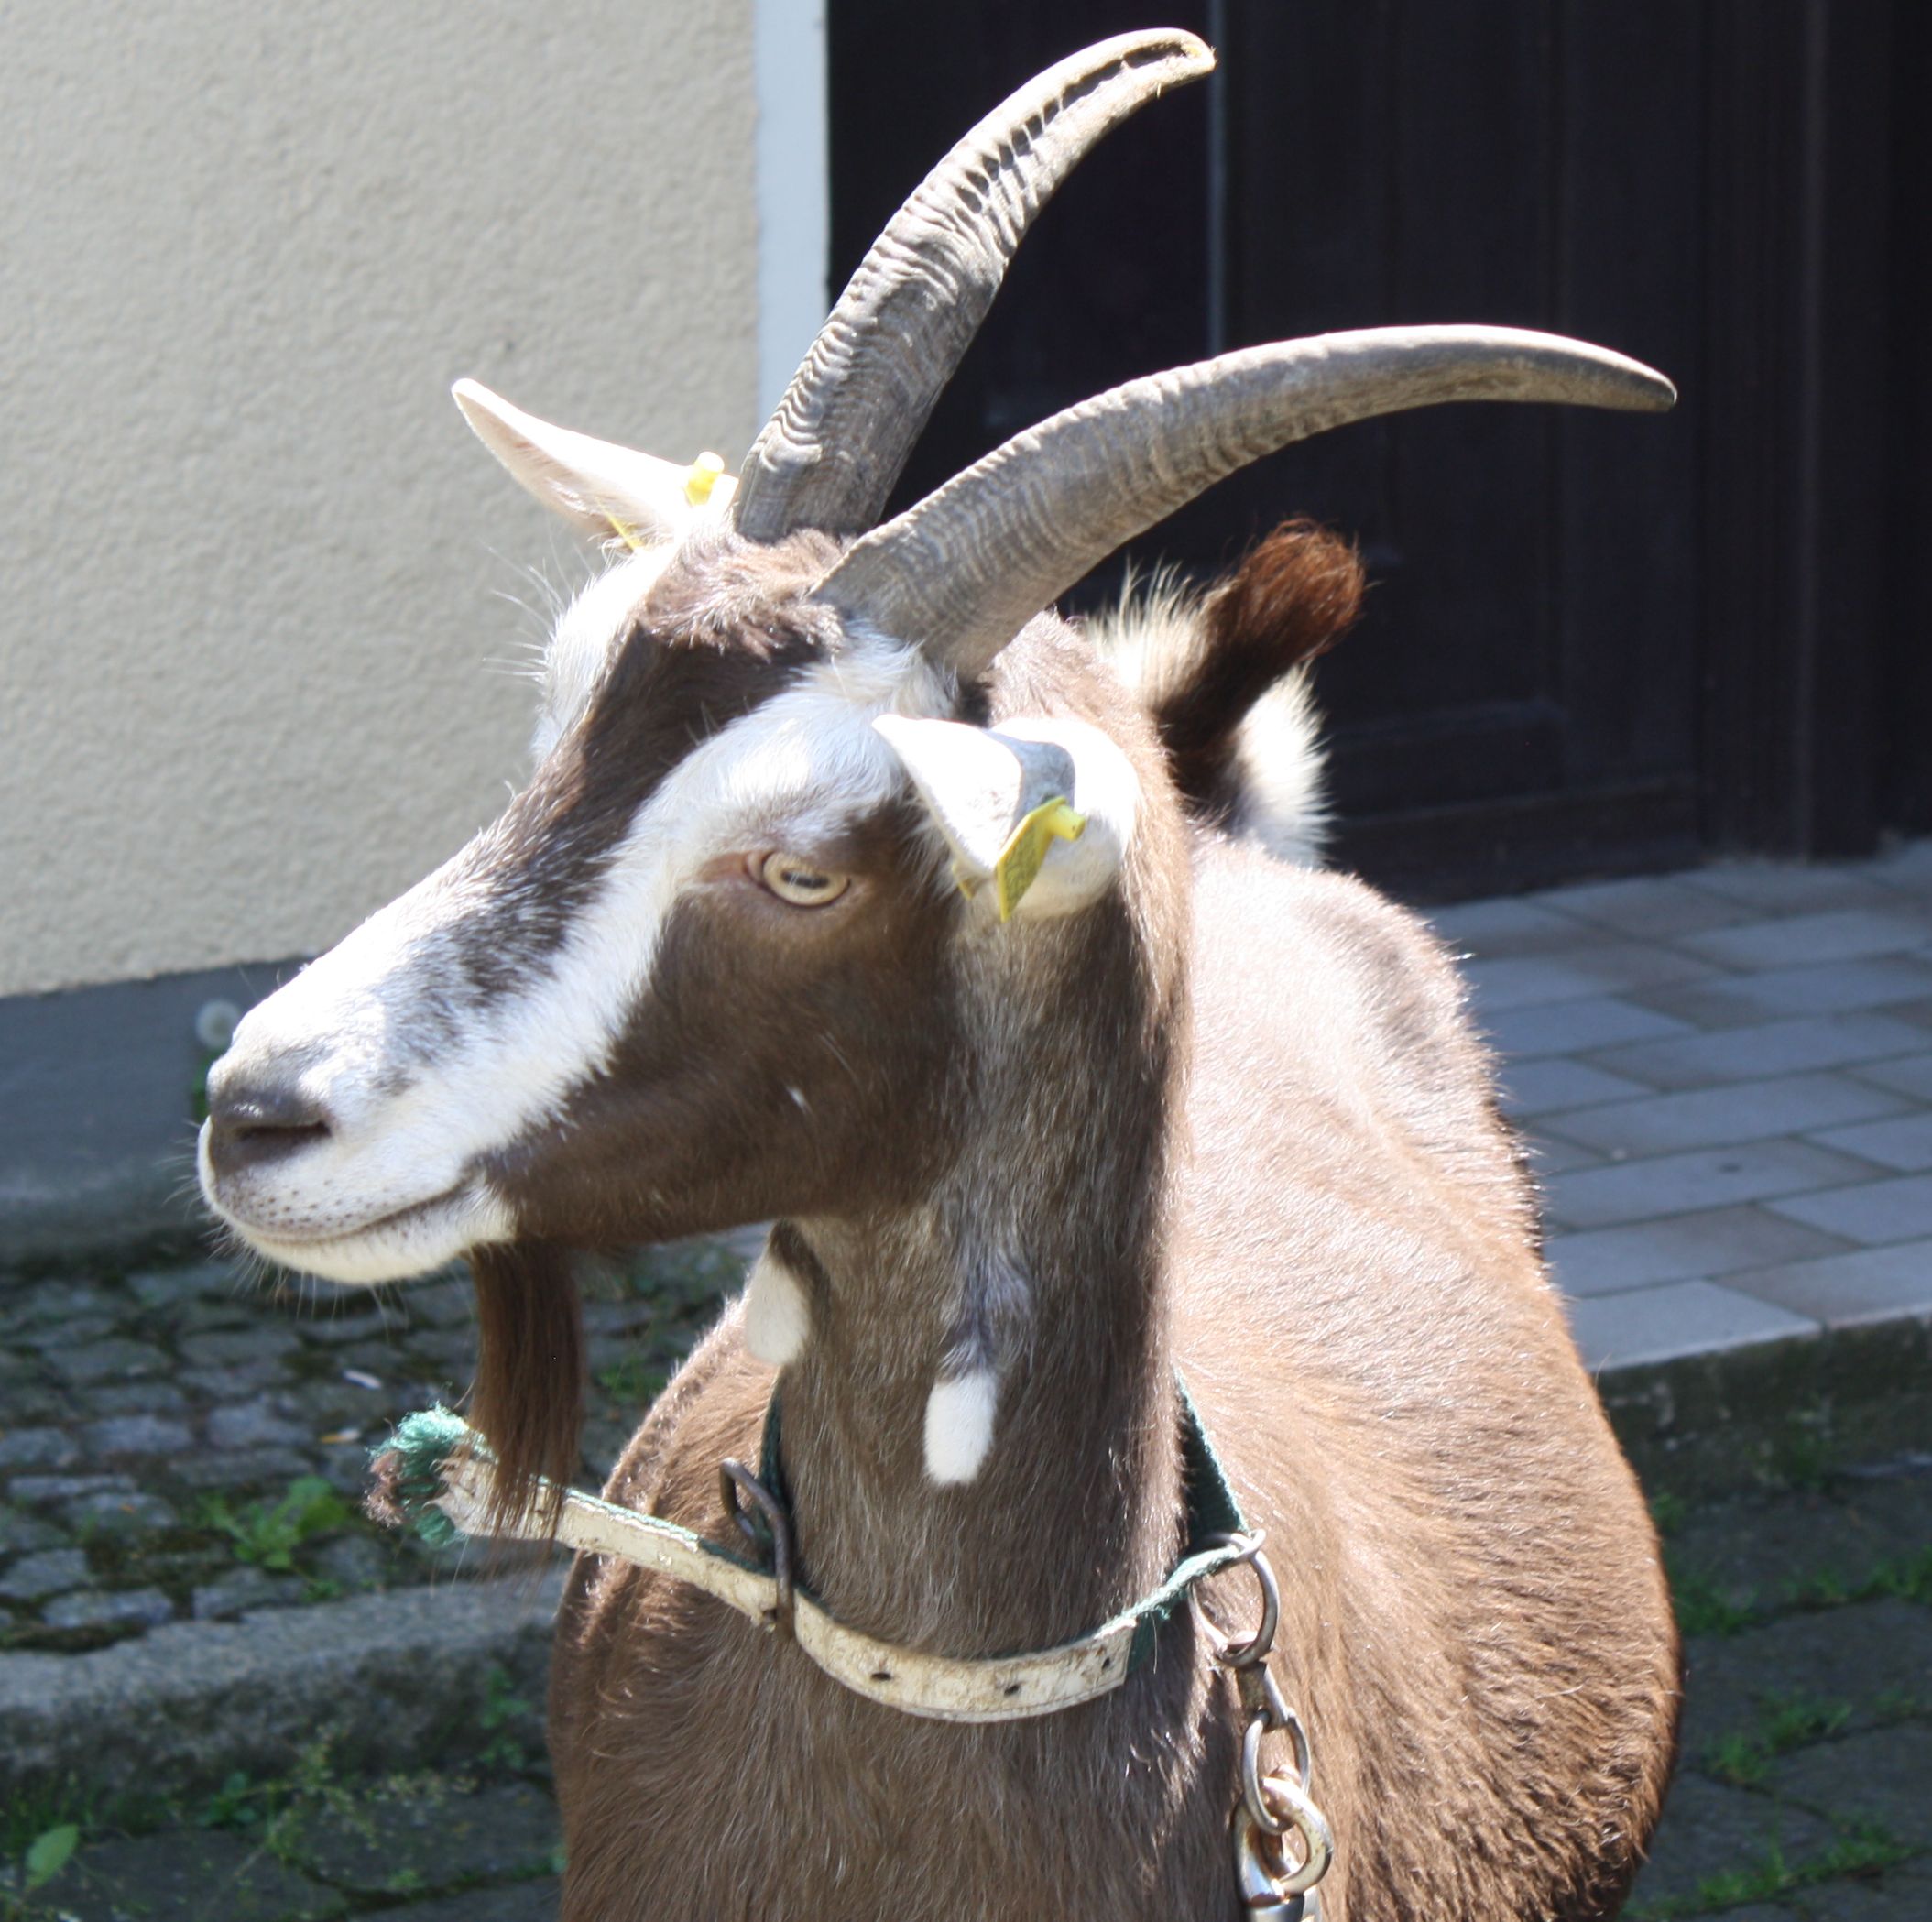 Eine Thüringer Waldziege mit gelber Ohrmarke trägt ein braunes Halsband.